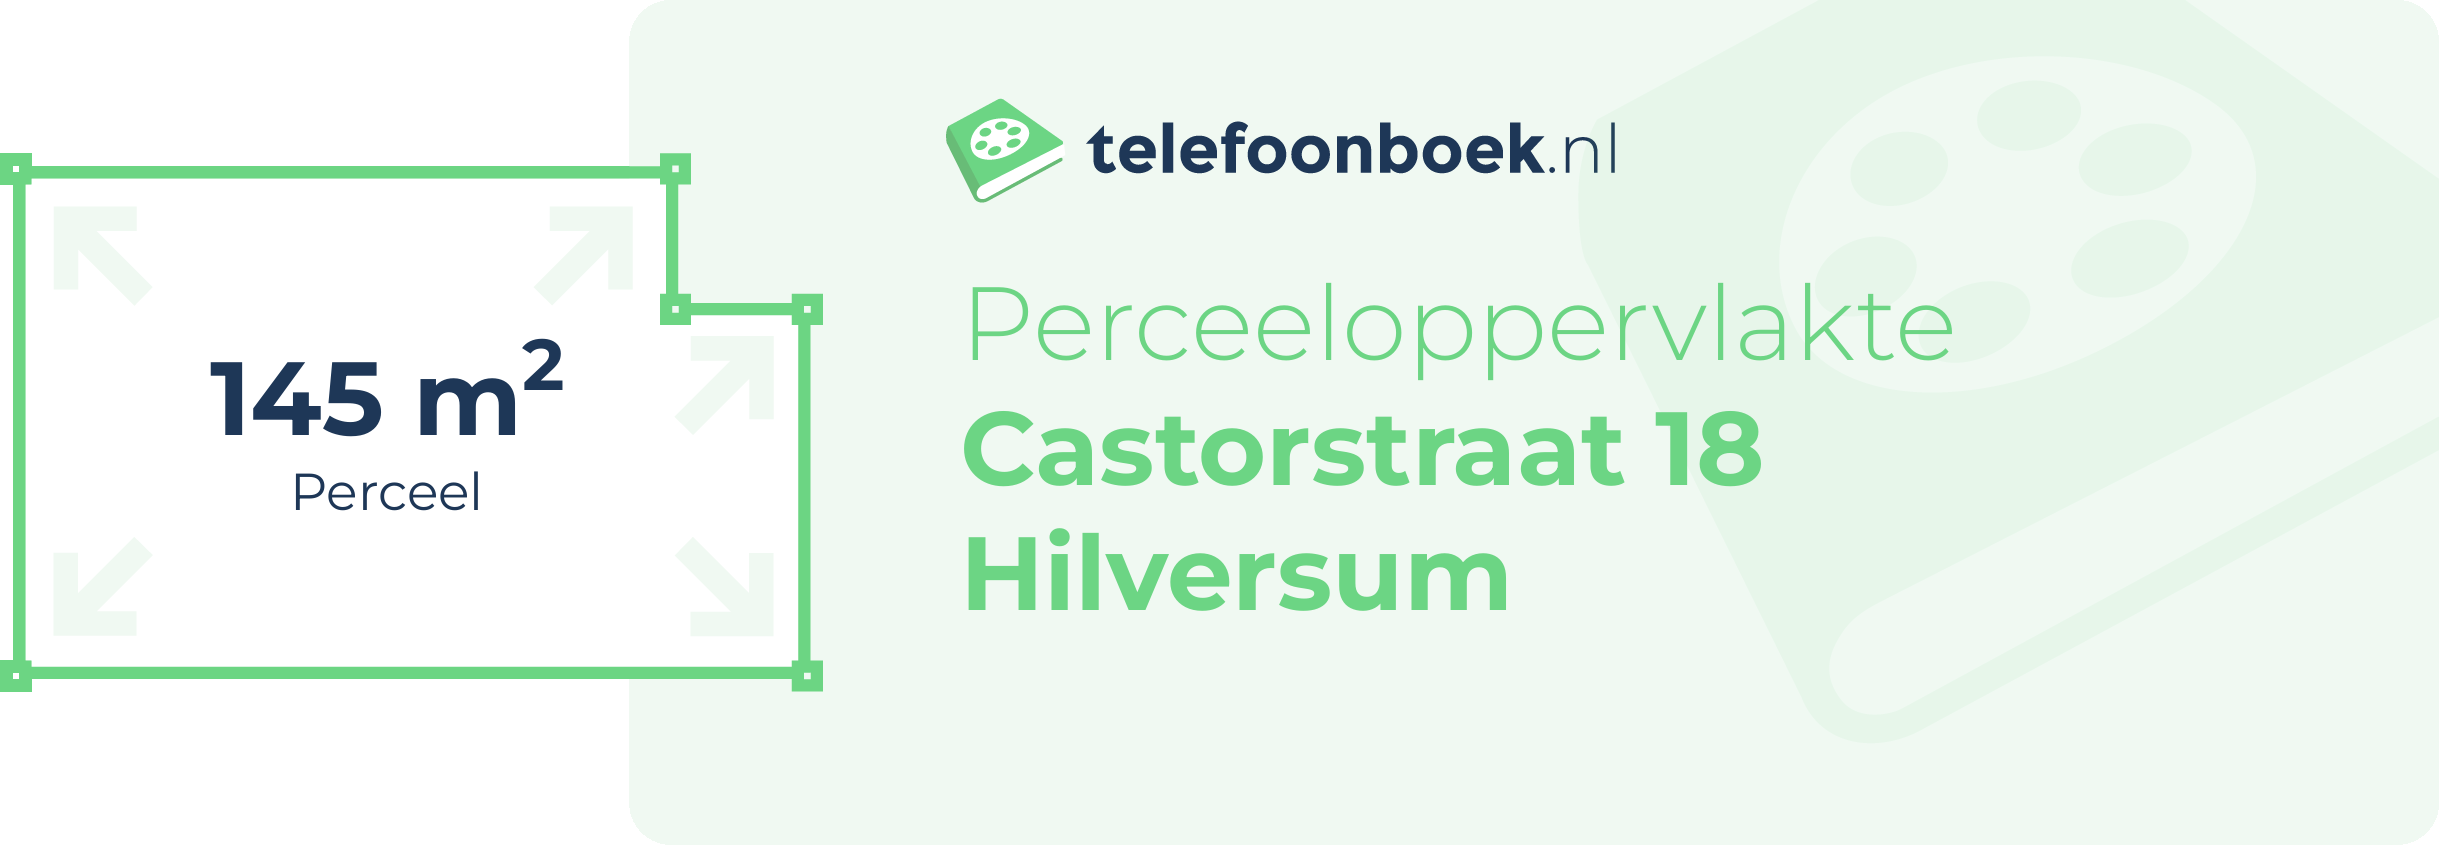 Perceeloppervlakte Castorstraat 18 Hilversum